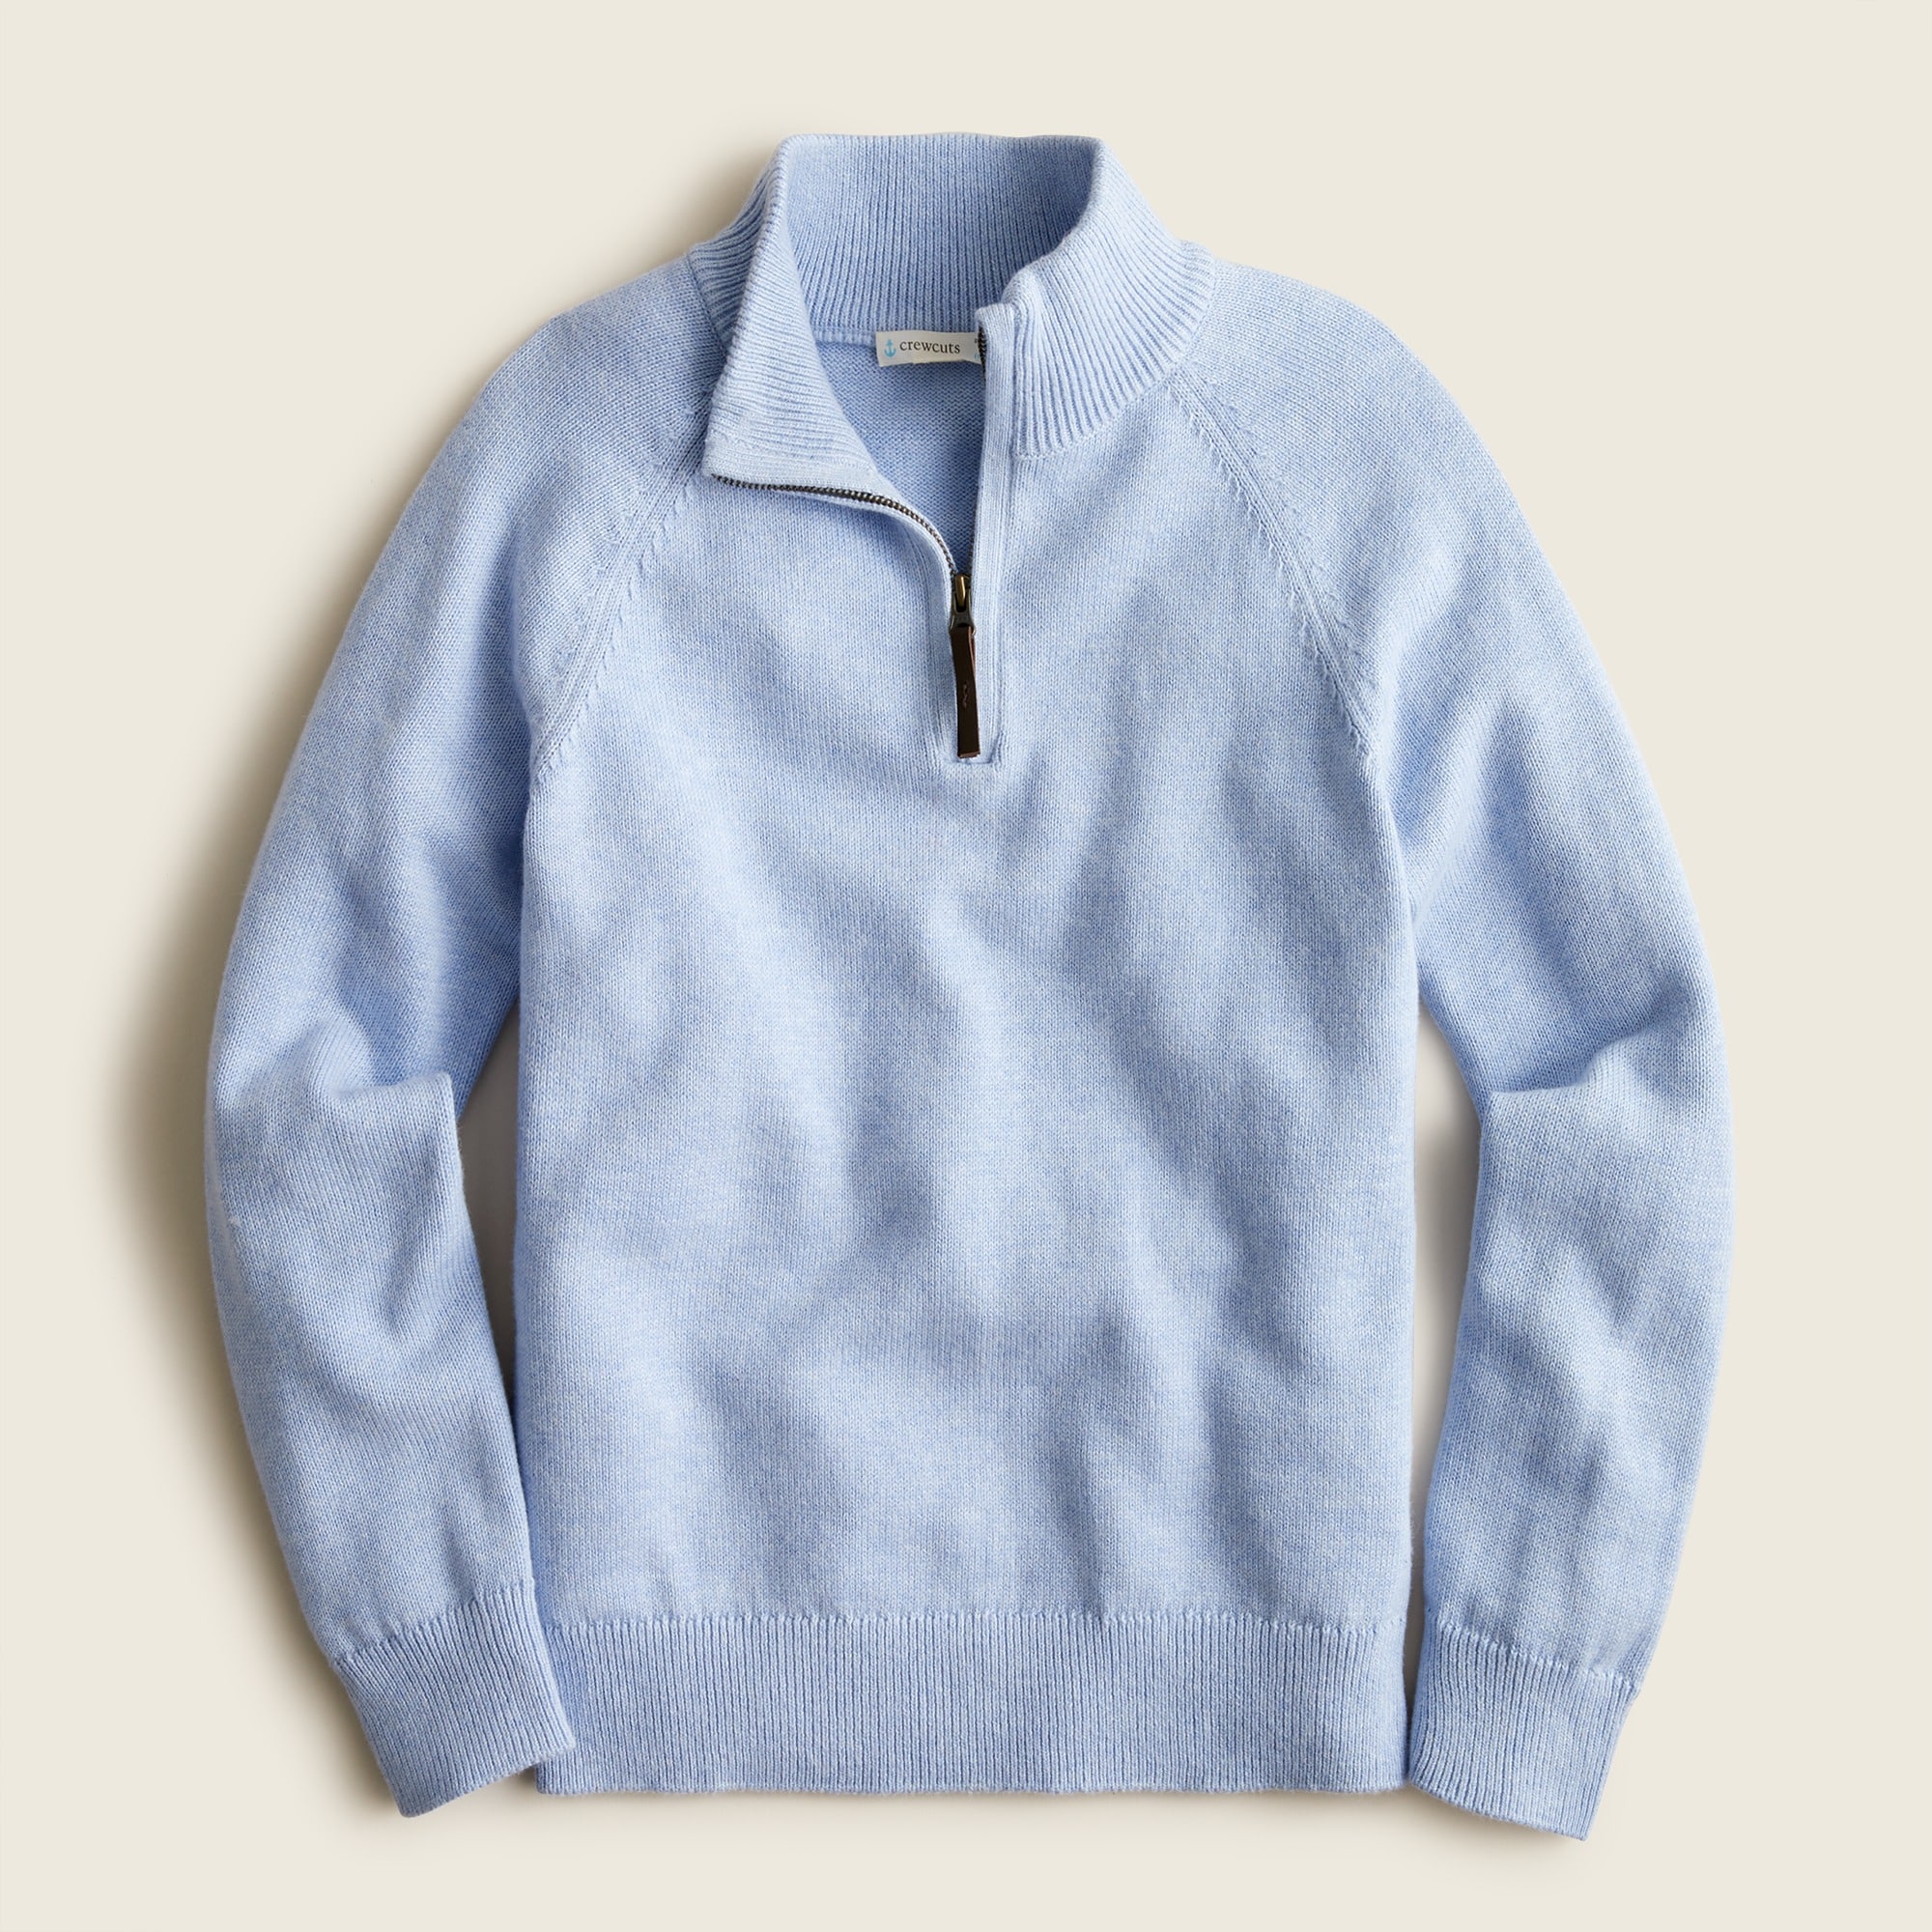 제이크루 보이즈 스웨터 J.crew Boys cotton-cashmere half-zip sweater,HTHR SKY